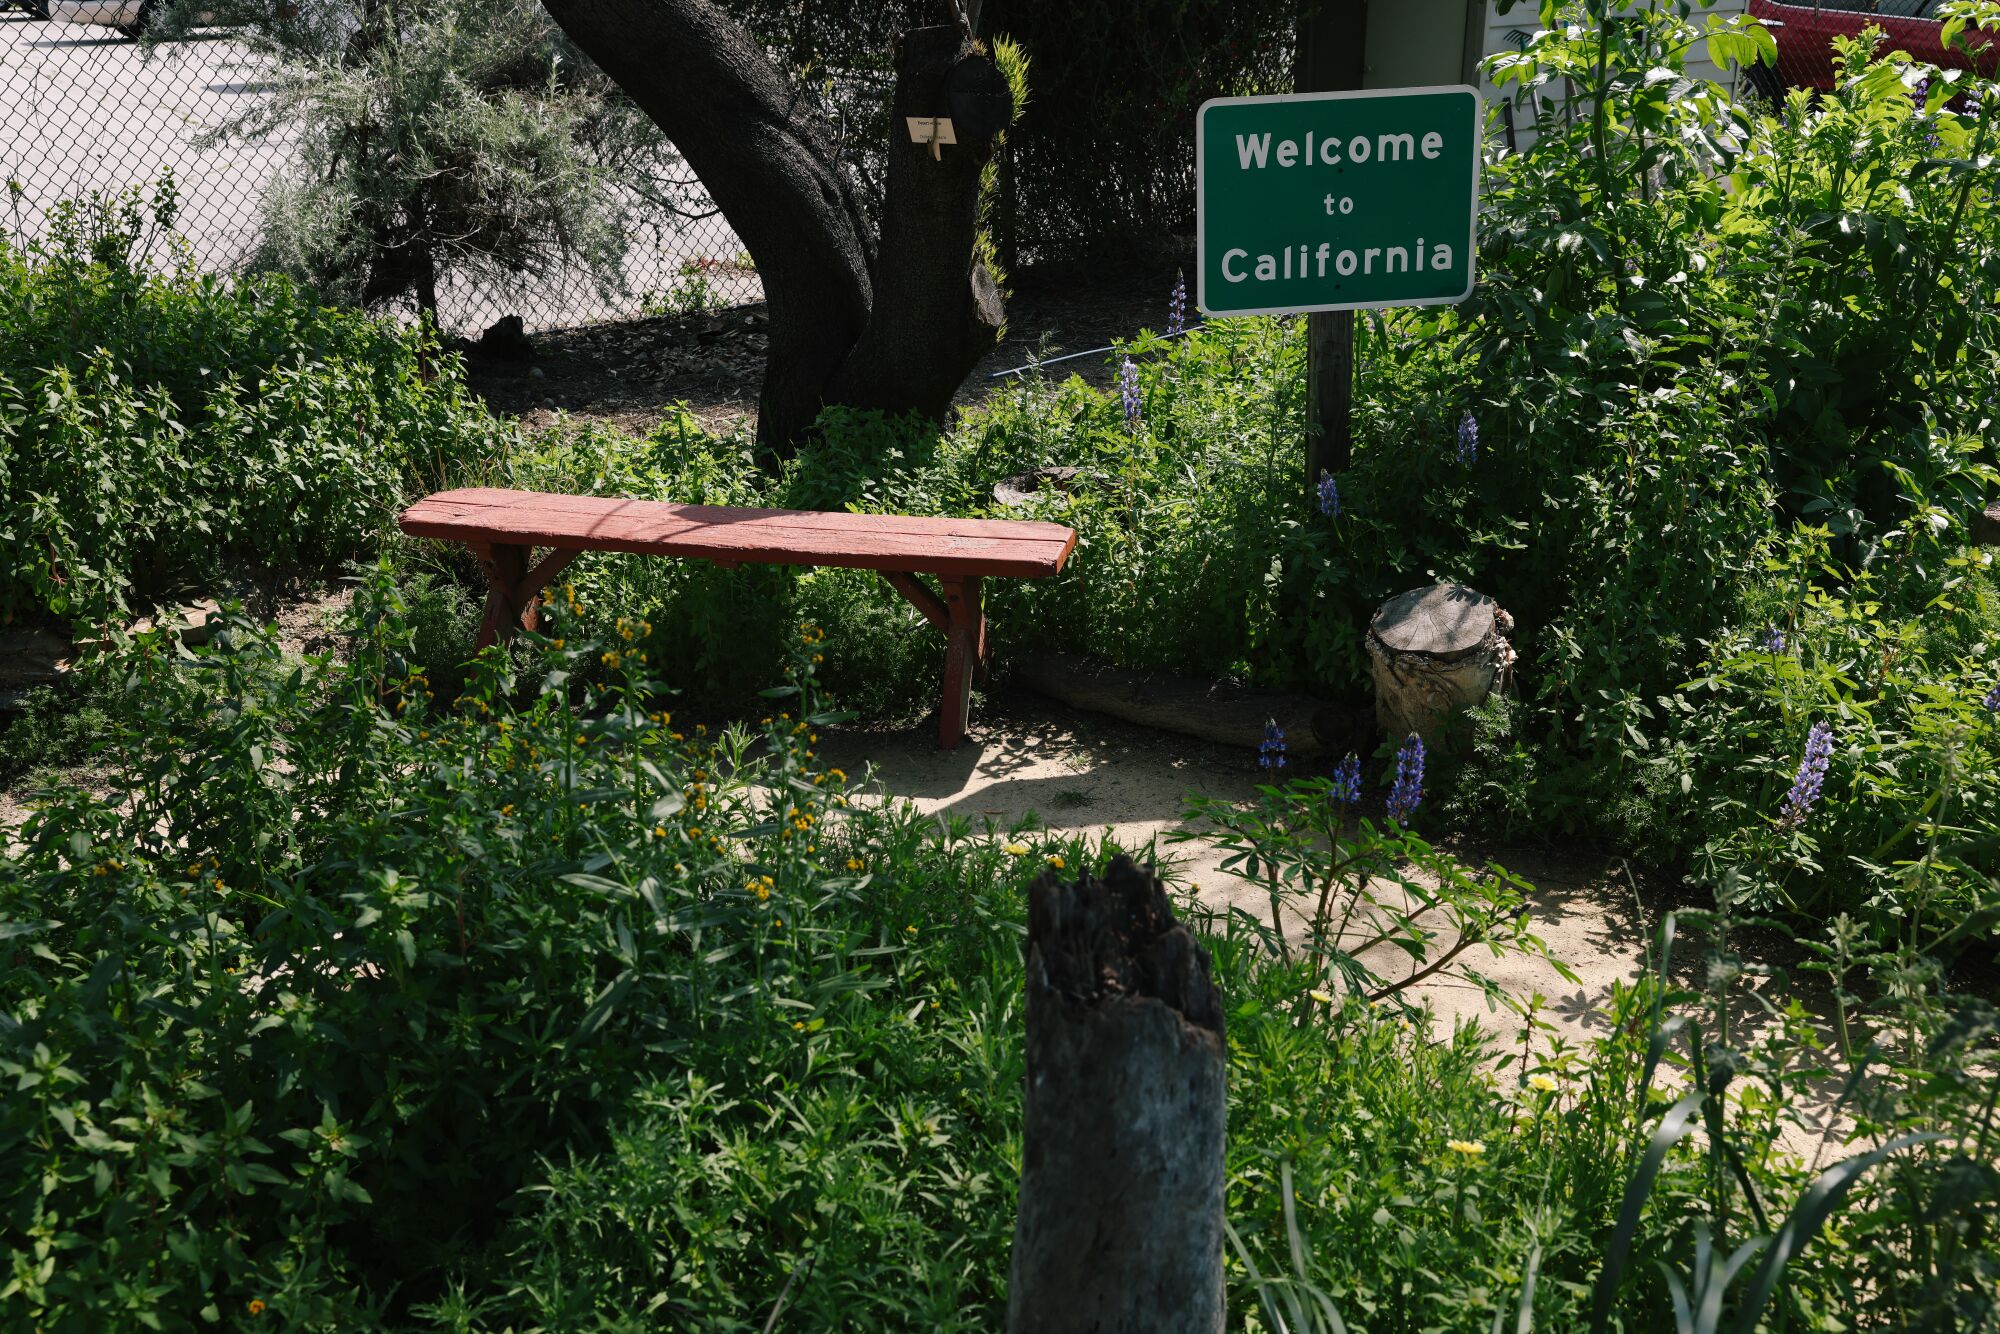 A 'Welcome to California' sign at a garden 